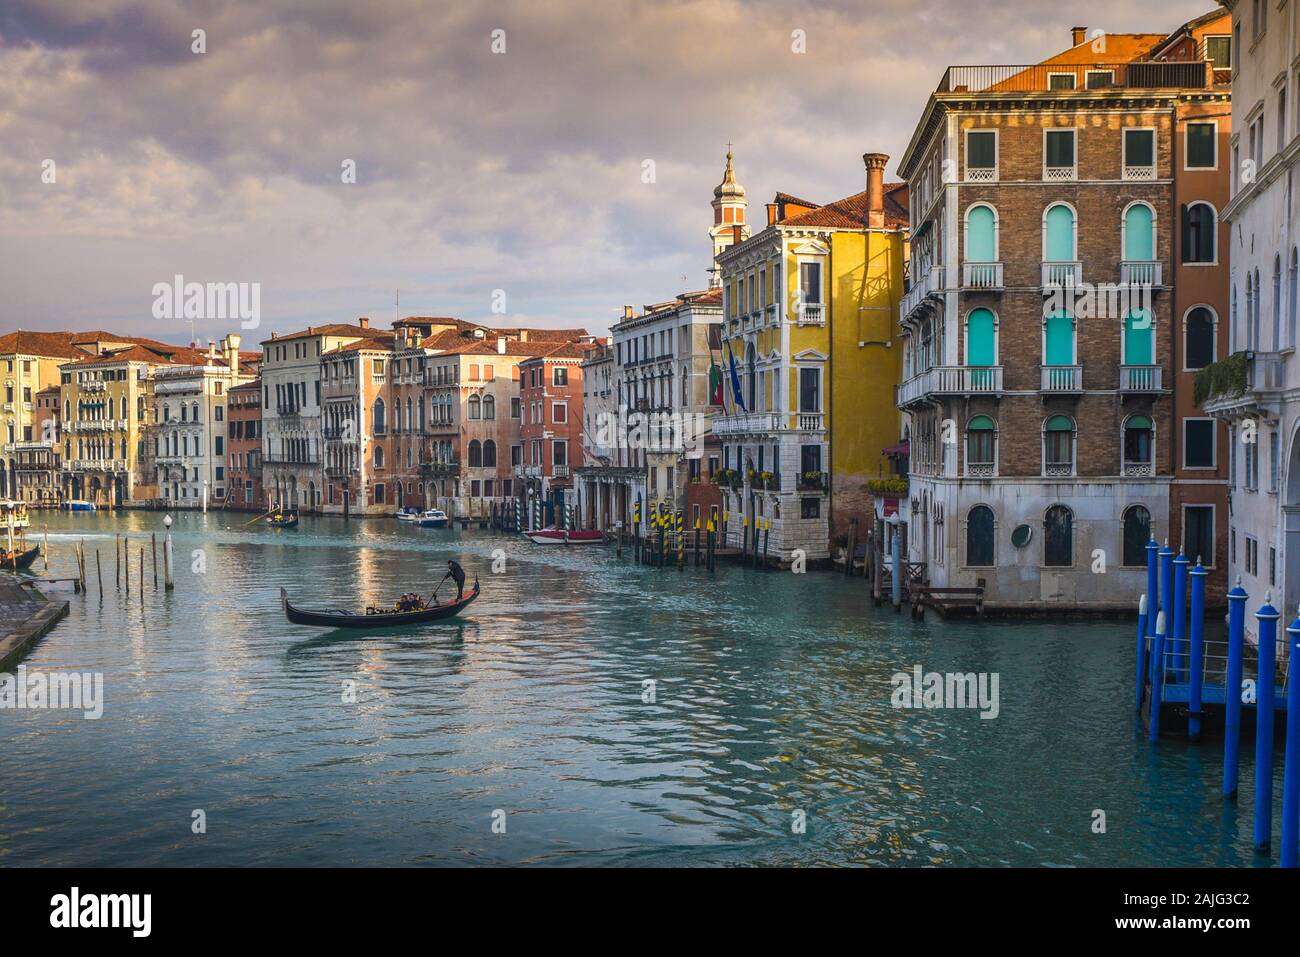 Venecia Gran canal (Canal Grande) con góndola y gondolero, reflexiones sobre el agua, desde el Puente de Rialto y típicas casas venecianas y arquitectura Foto de stock